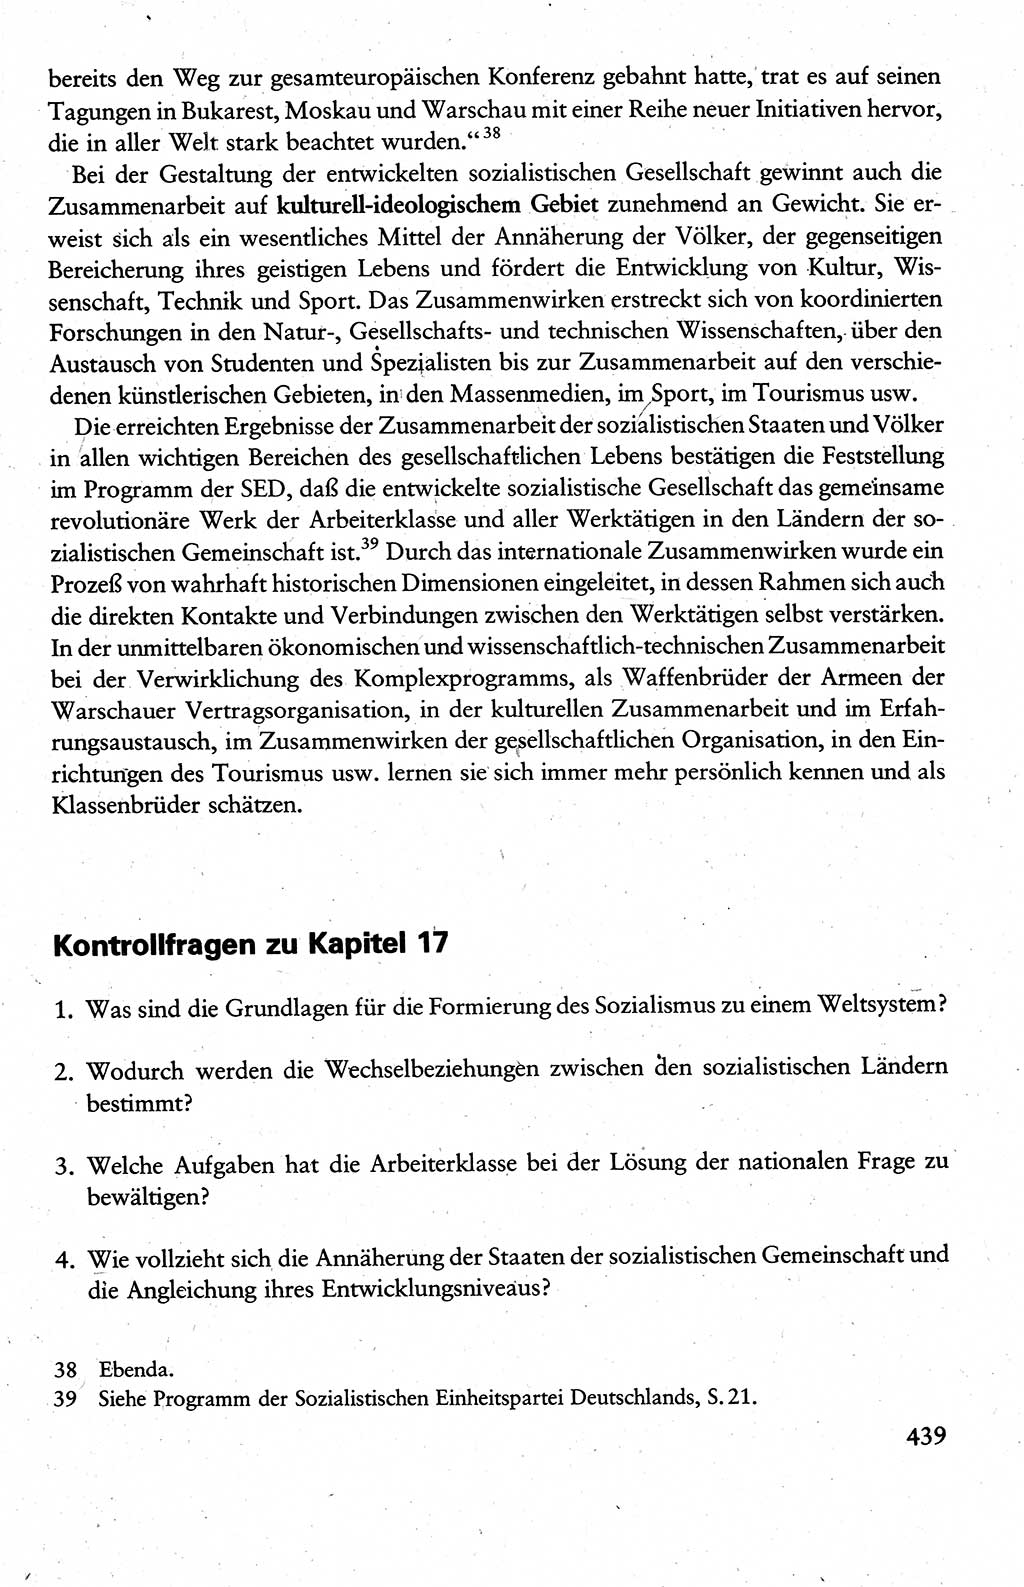 Wissenschaftlicher Kommunismus [Deutsche Demokratische Republik (DDR)], Lehrbuch für das marxistisch-leninistische Grundlagenstudium 1983, Seite 439 (Wiss. Komm. DDR Lb. 1983, S. 439)